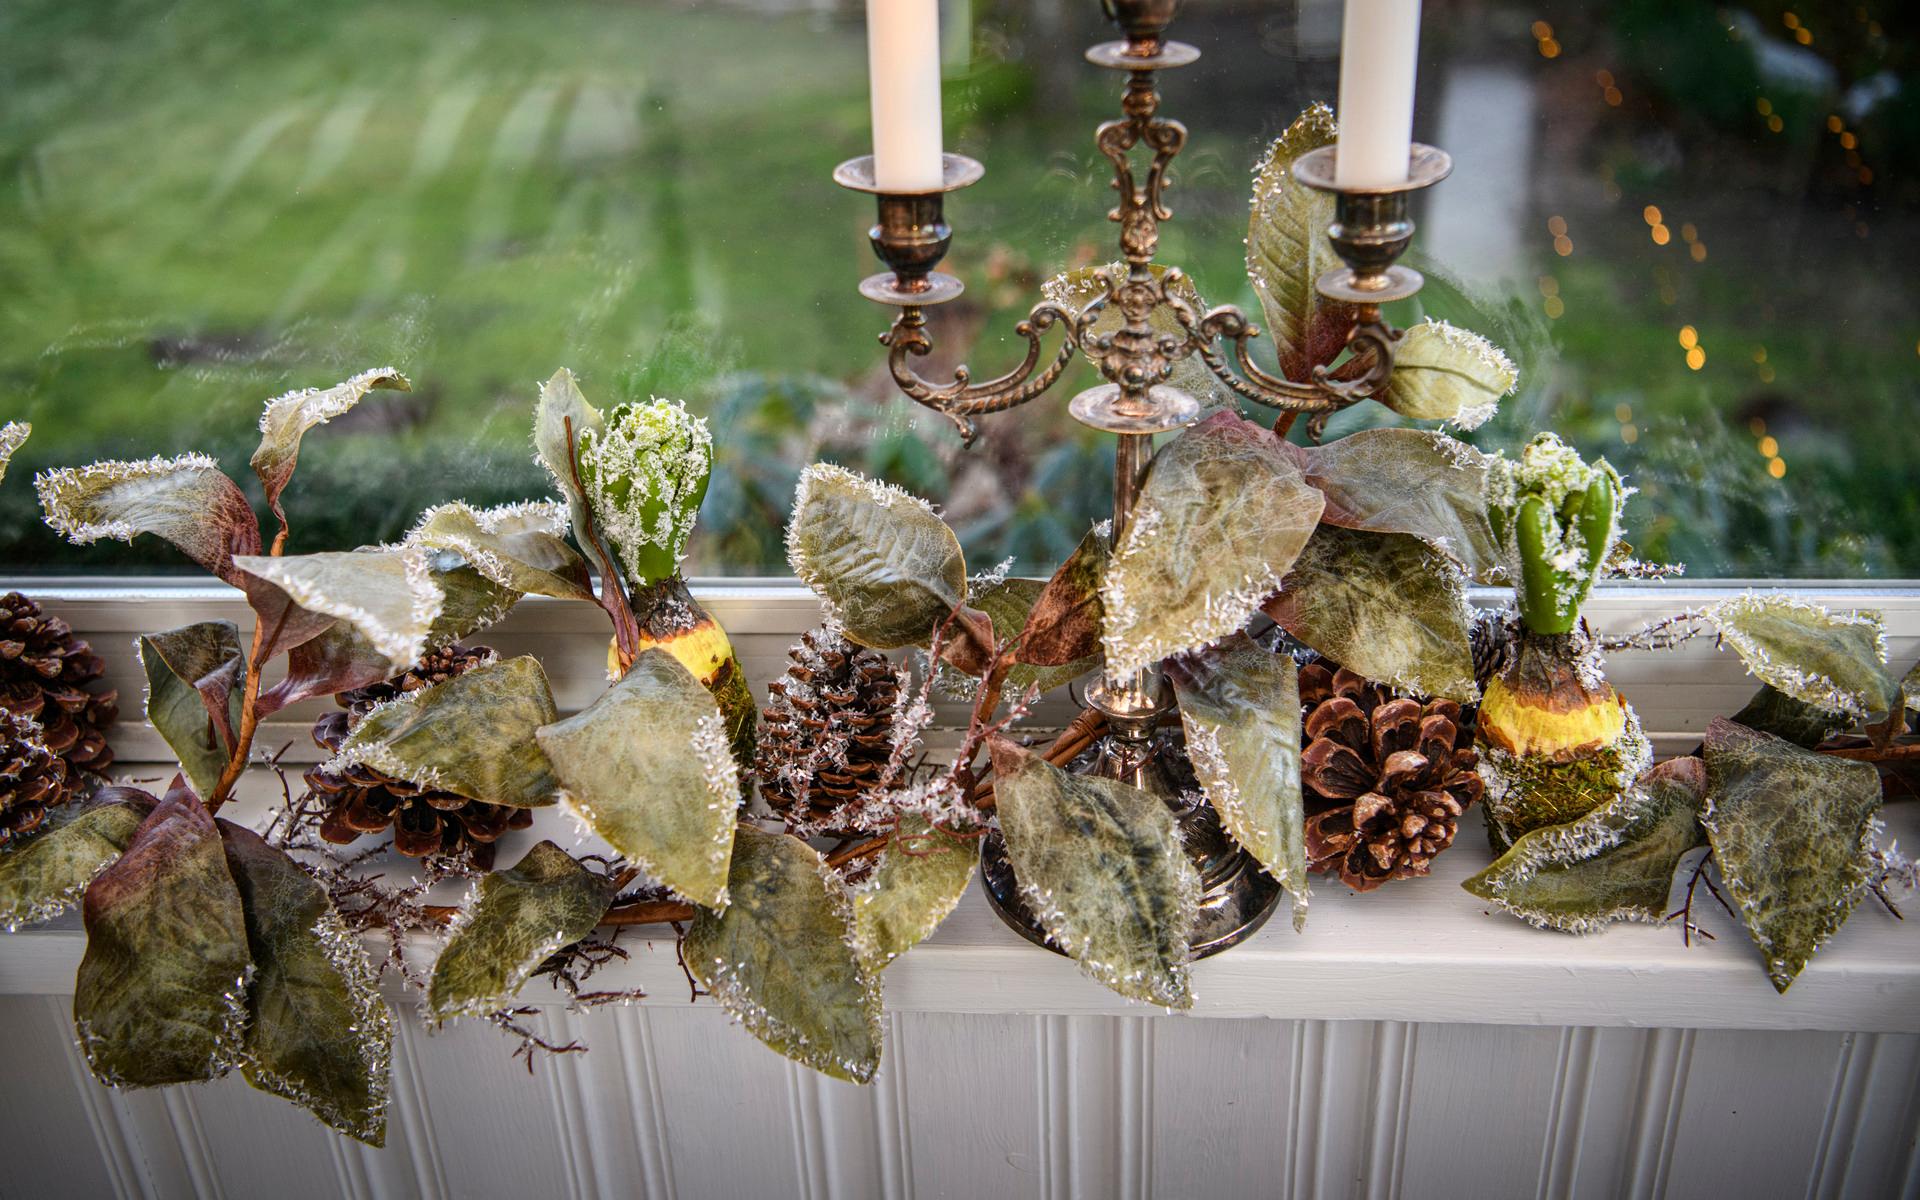 Matsalens fönsterkarmar har dekorerats med grönska och frostade blad.